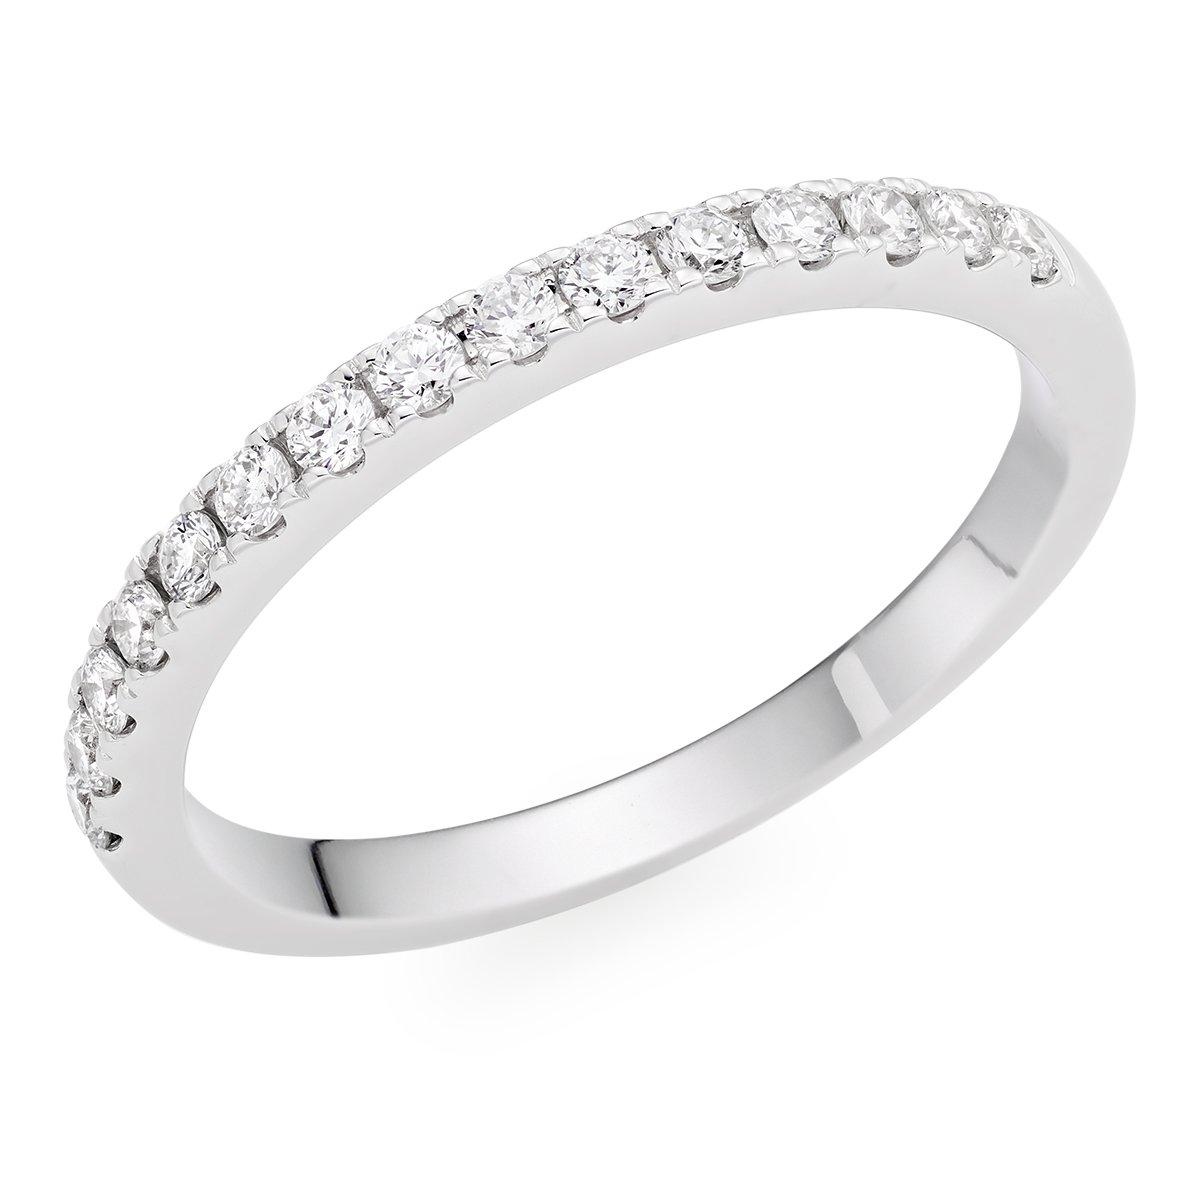 18ct White Gold Diamond Ladies Wedding Ring | 0129163 | Beaverbrooks ...